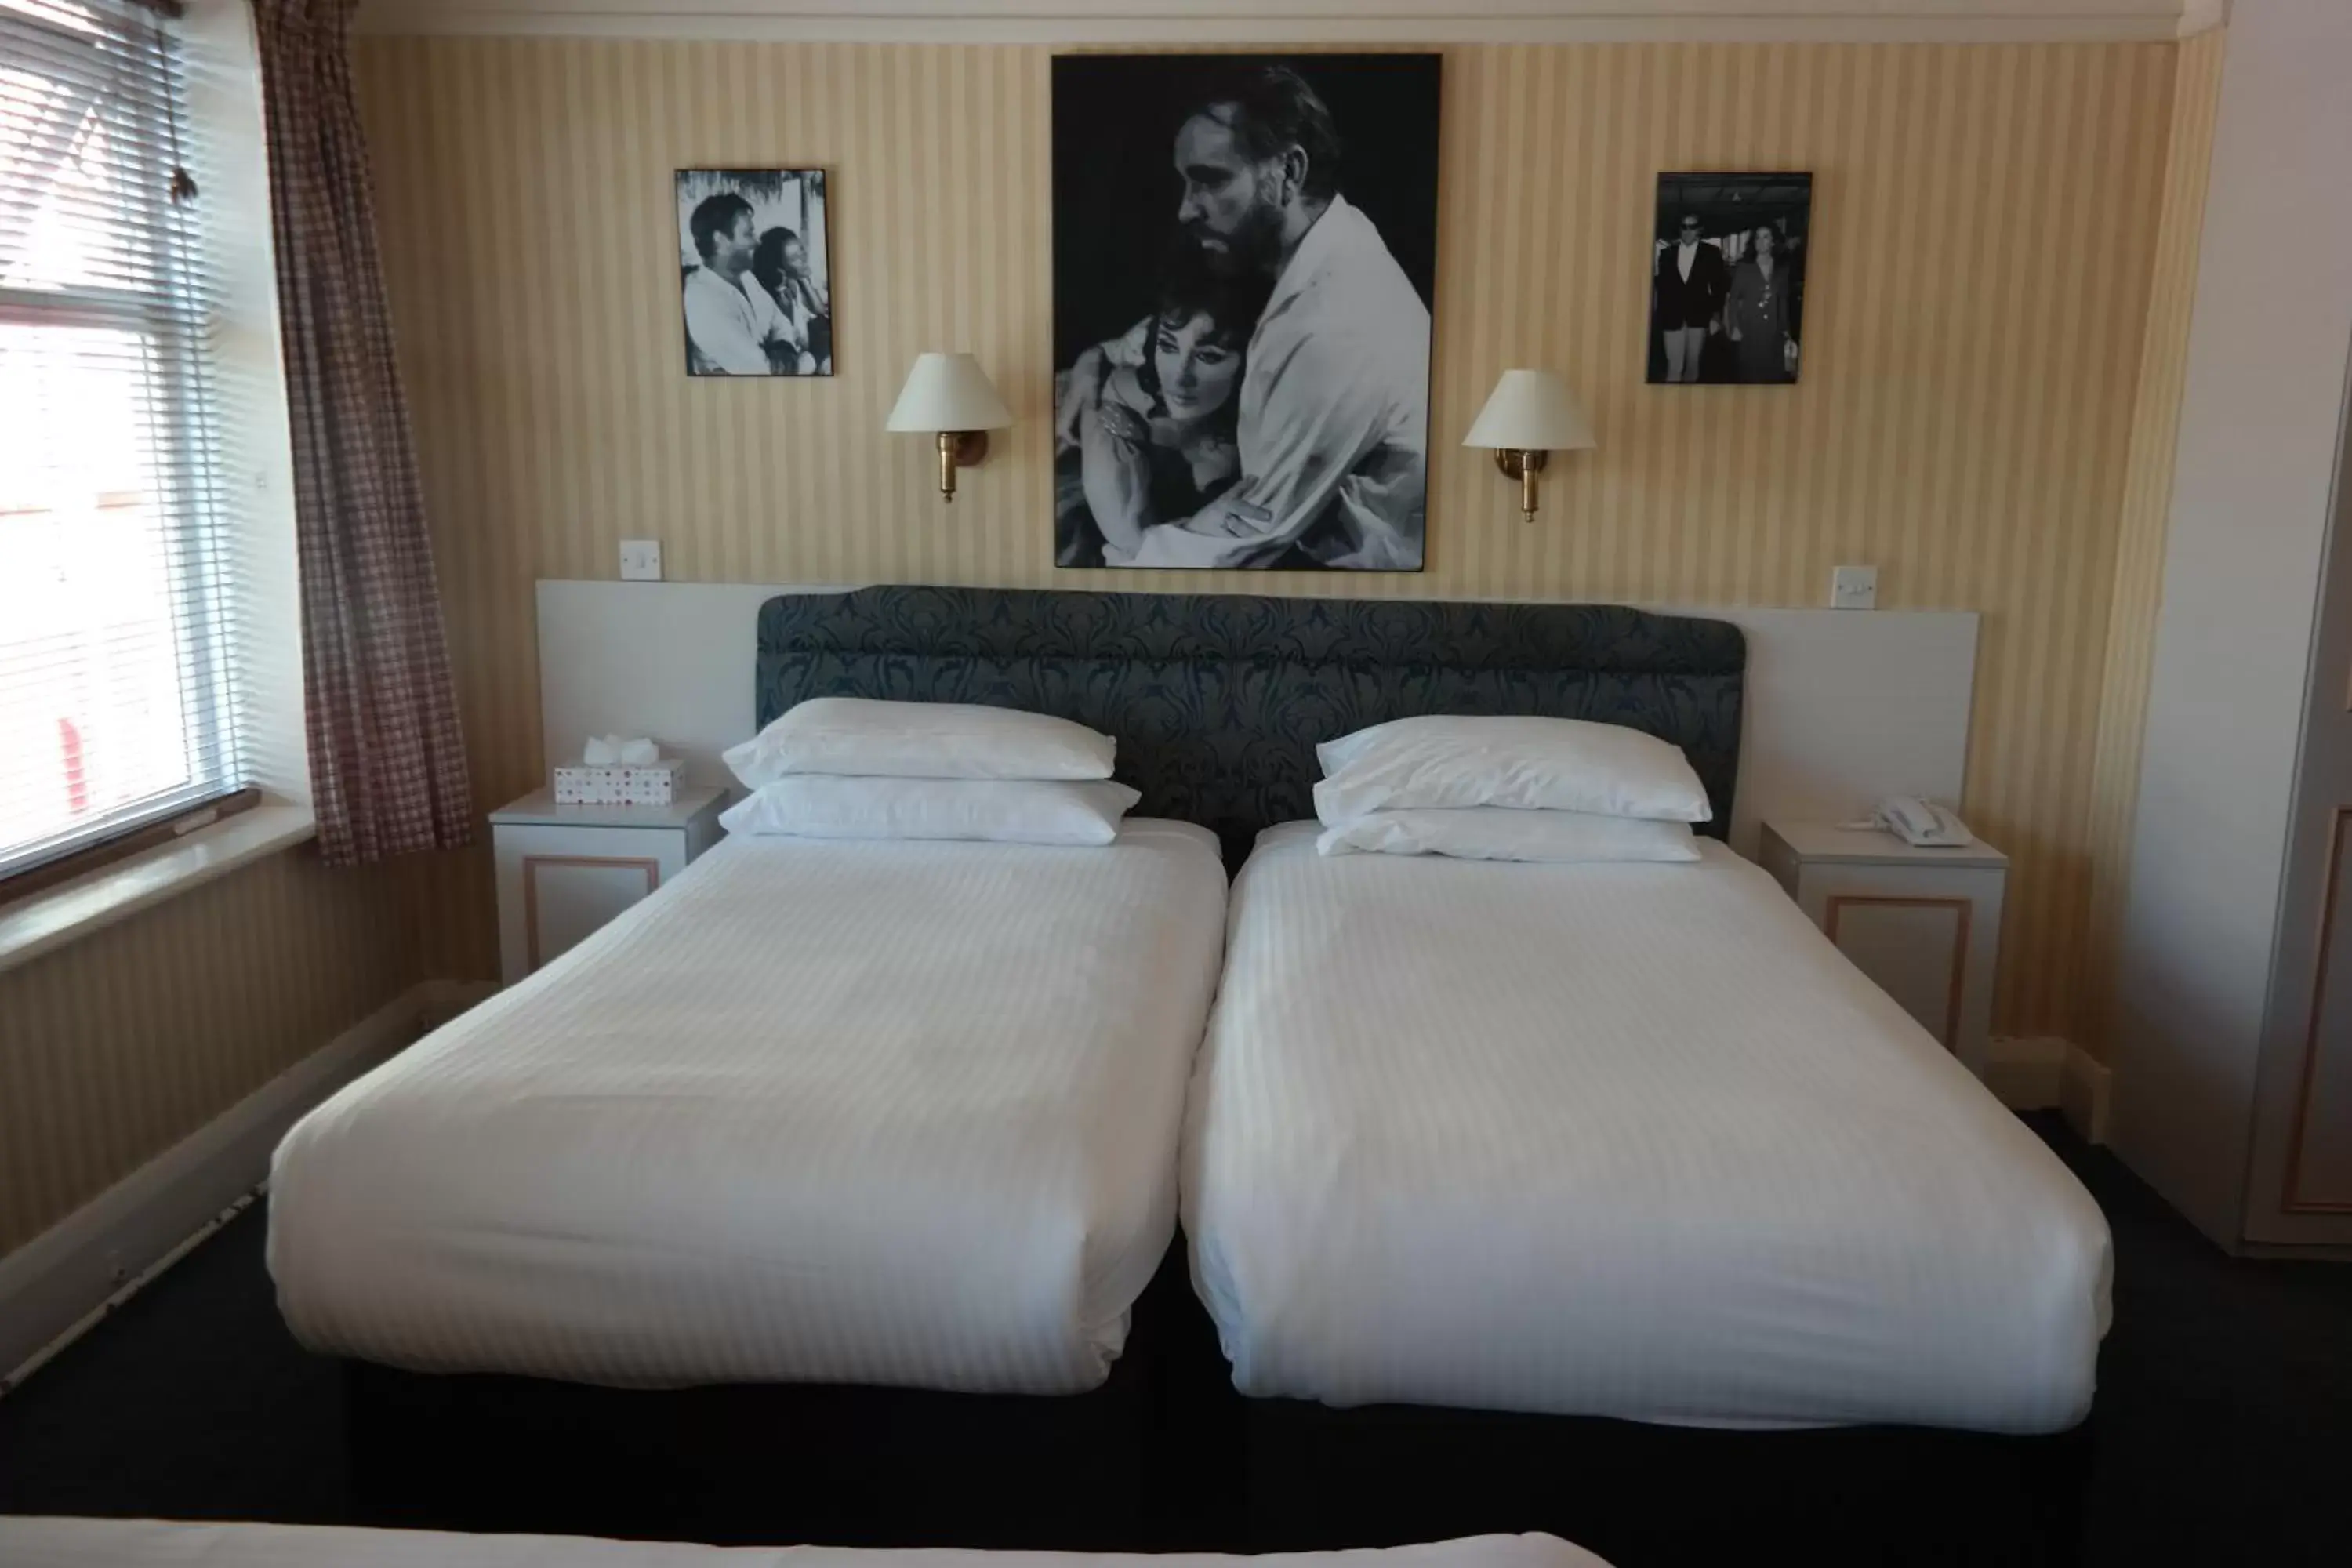 Bedroom in Hotel Celebrity